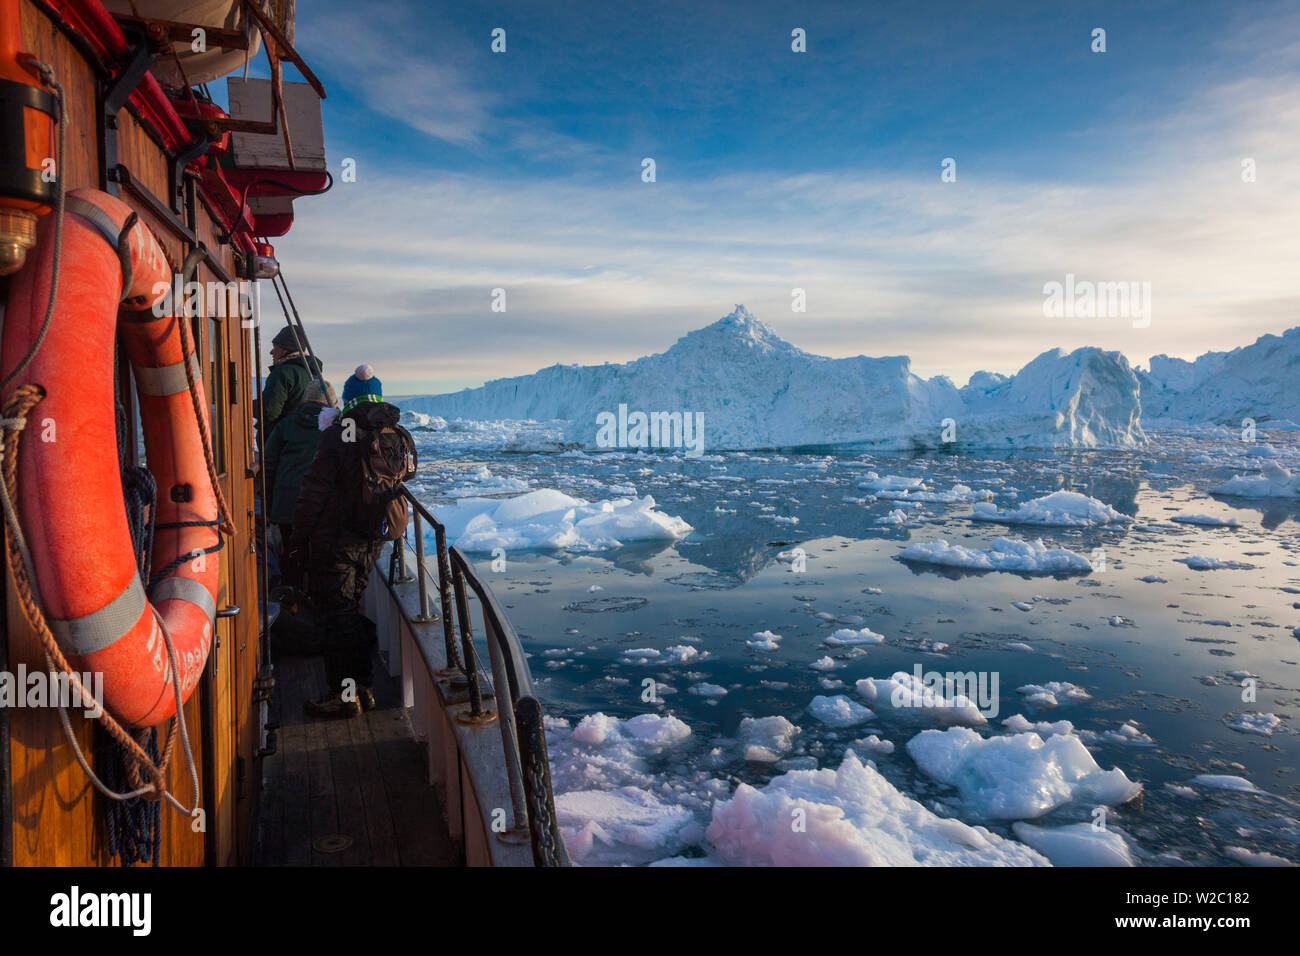 La Groenlandia, Disko Bay, Ilulissat, a bordo di barche da pesca nel ghiaccio flaoting, tramonto Foto Stock